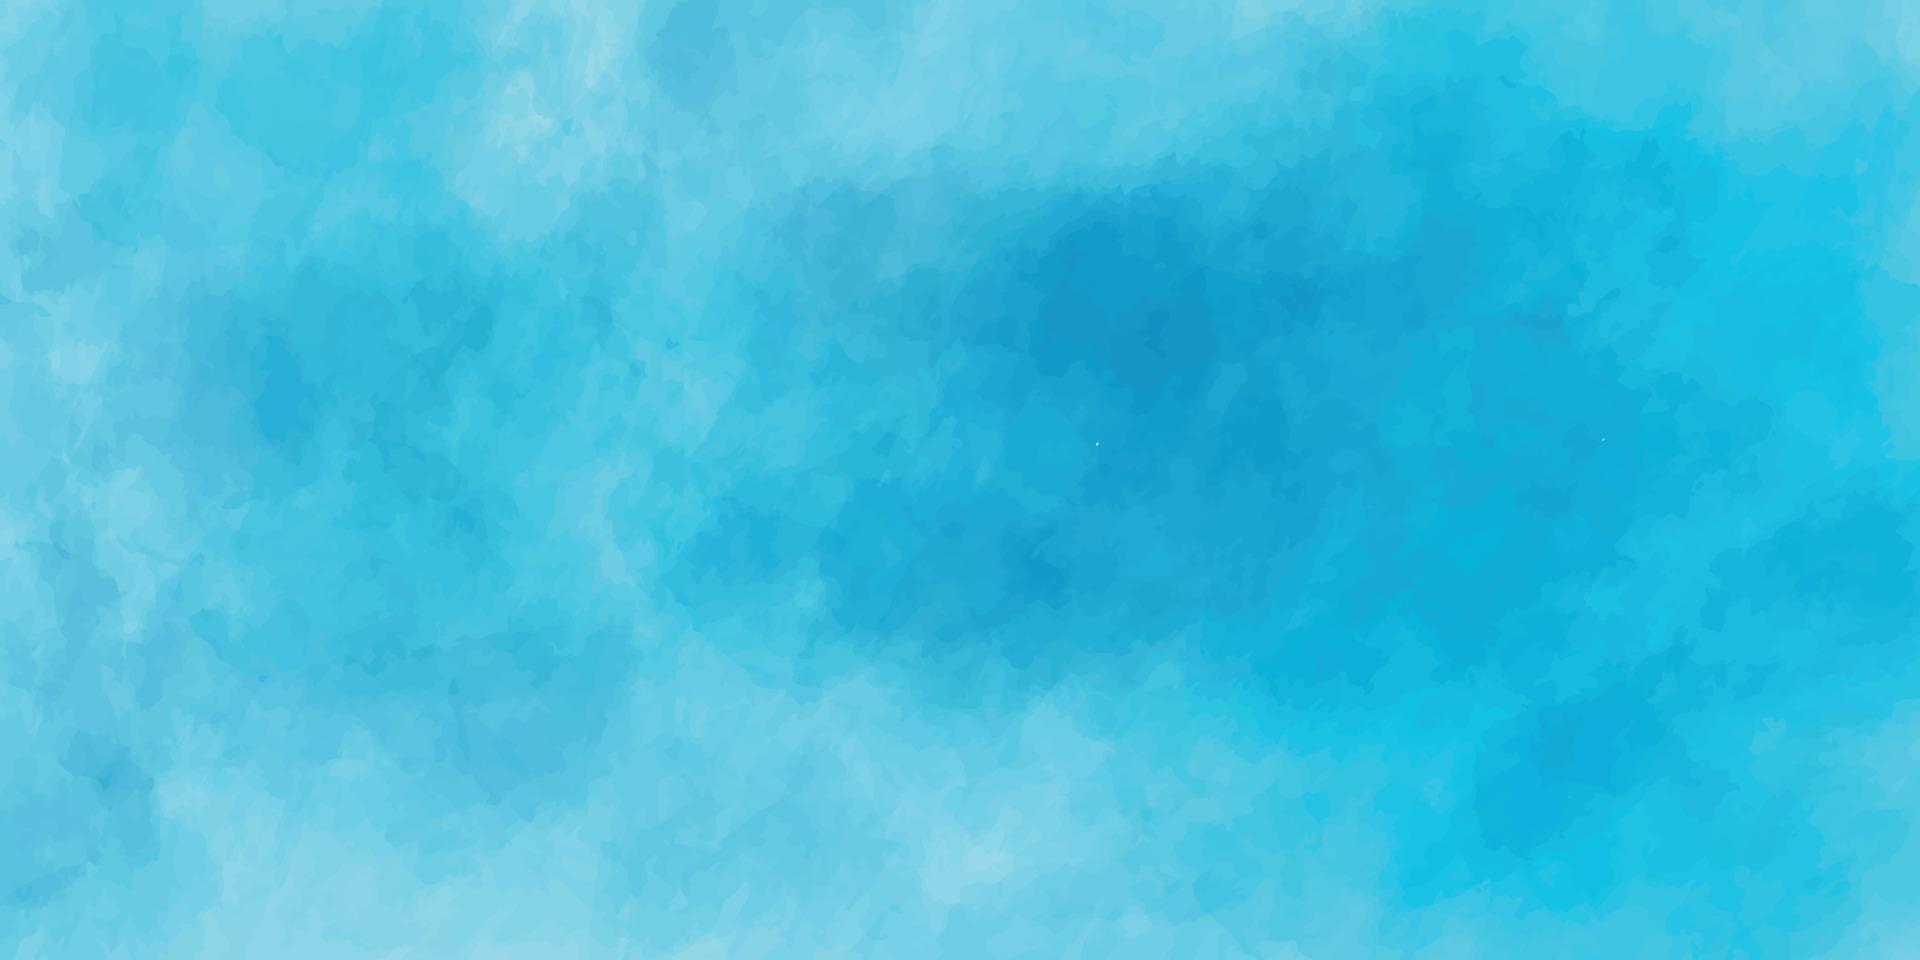 blu grunge acquerello struttura sfondo con Fumo, pastello acquerello dipingere astratto sfondo Usato per attività commerciale, aziendale, istituzione, manifesto, modello, festa, festivo, vettore, illustrazione vettore